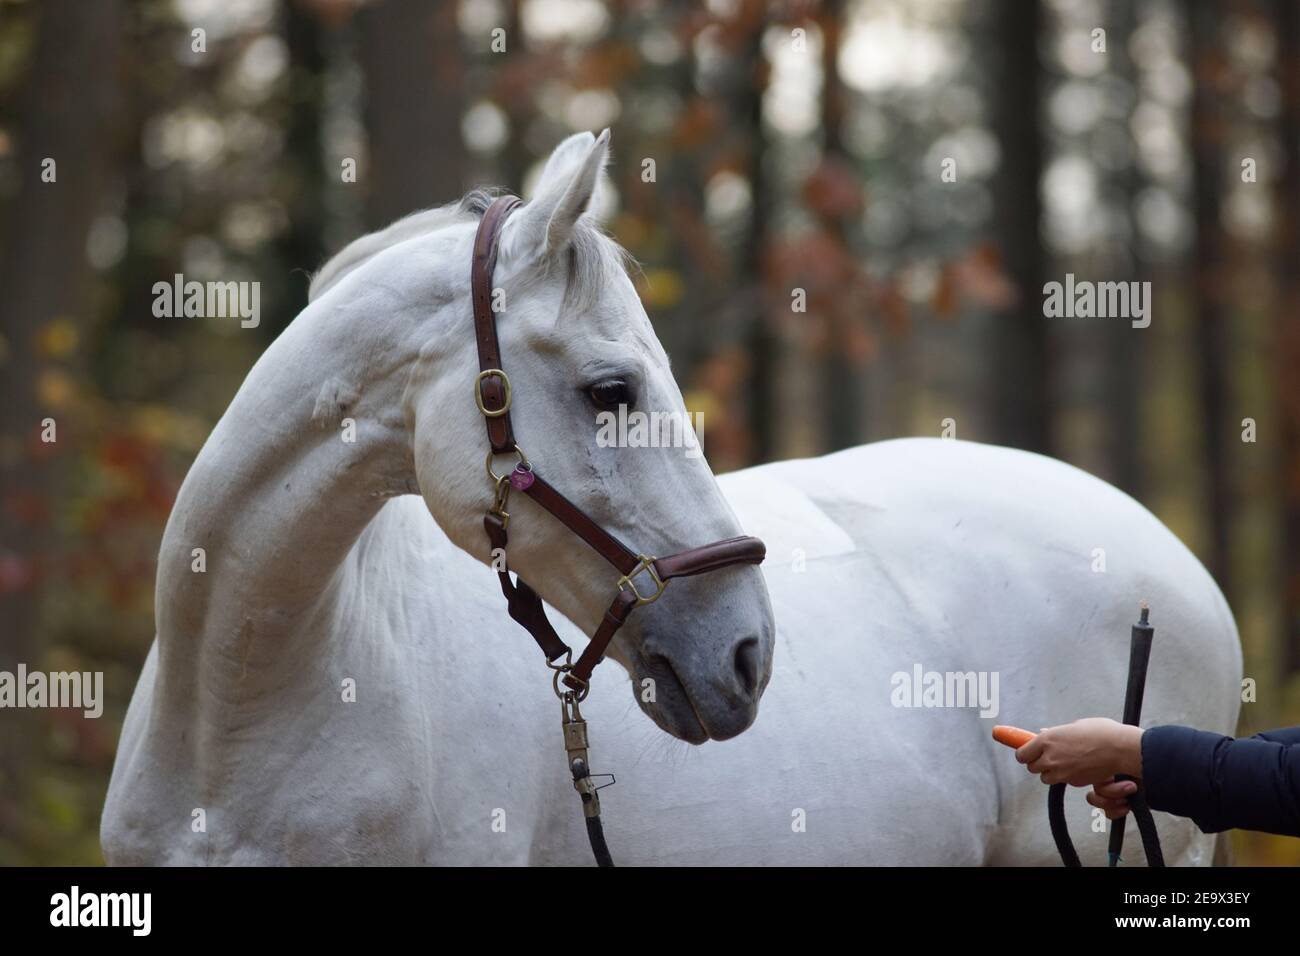 Weißes Pferd und eine Hand mit einer Karotte, die Bodenarbeit für Beziehung und Vertrauensbildung tut Stockfoto